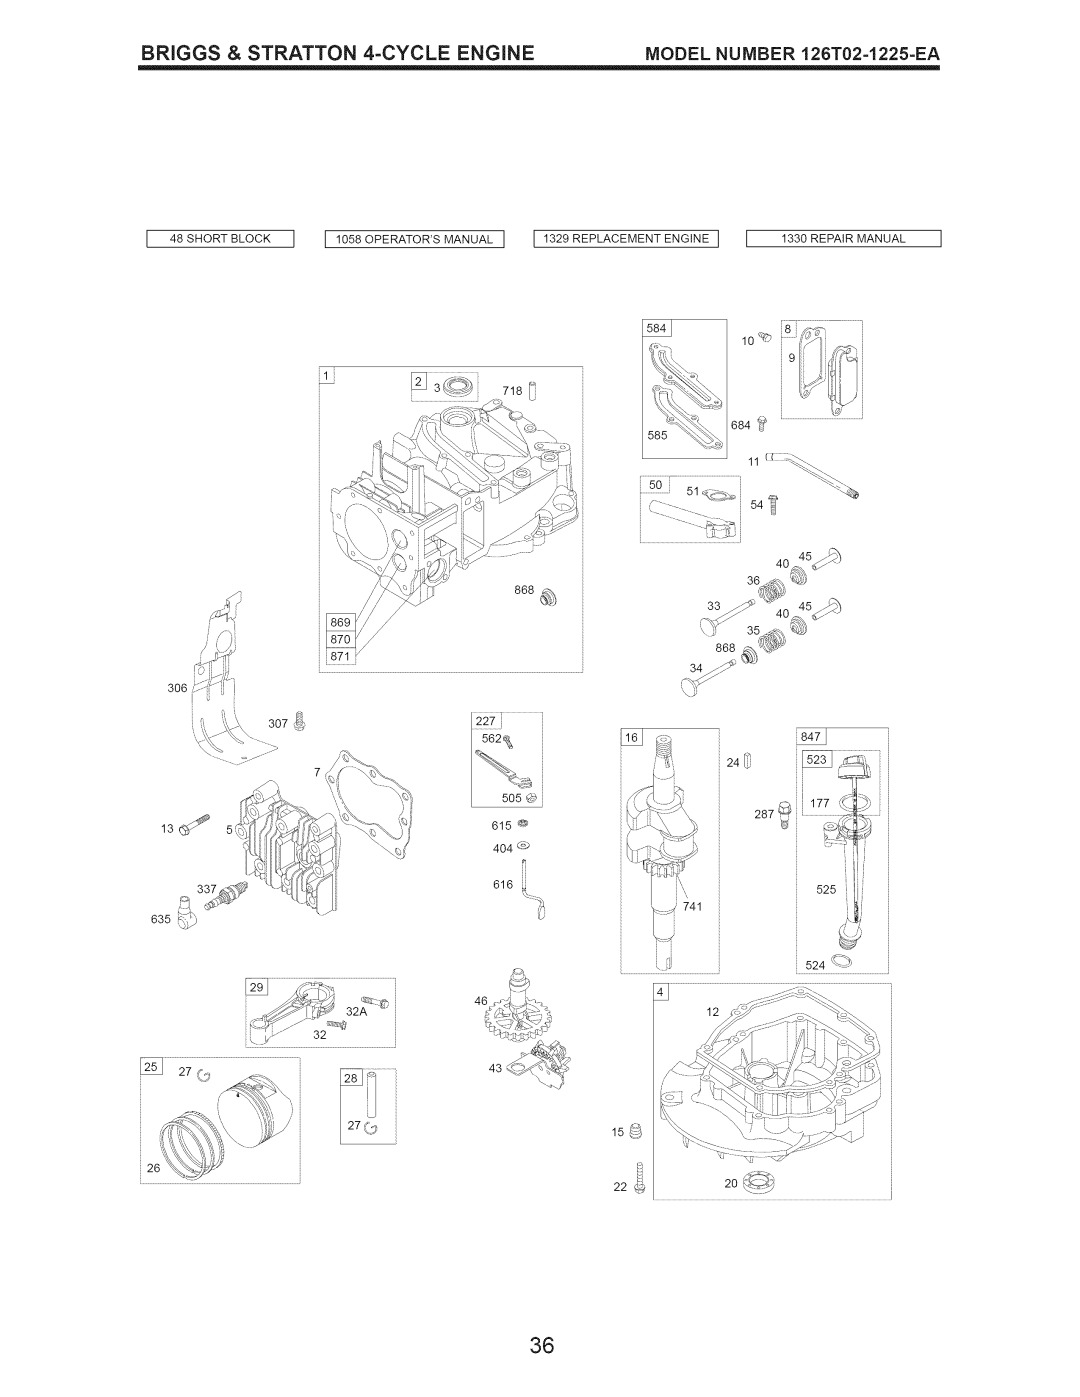 Craftsman 917.389061 _84J, _;qL#, Short Block, II058OPERATORSMANUALI I 1329 REPLACEMENT ENGINE, Repair Manual, 562_ 